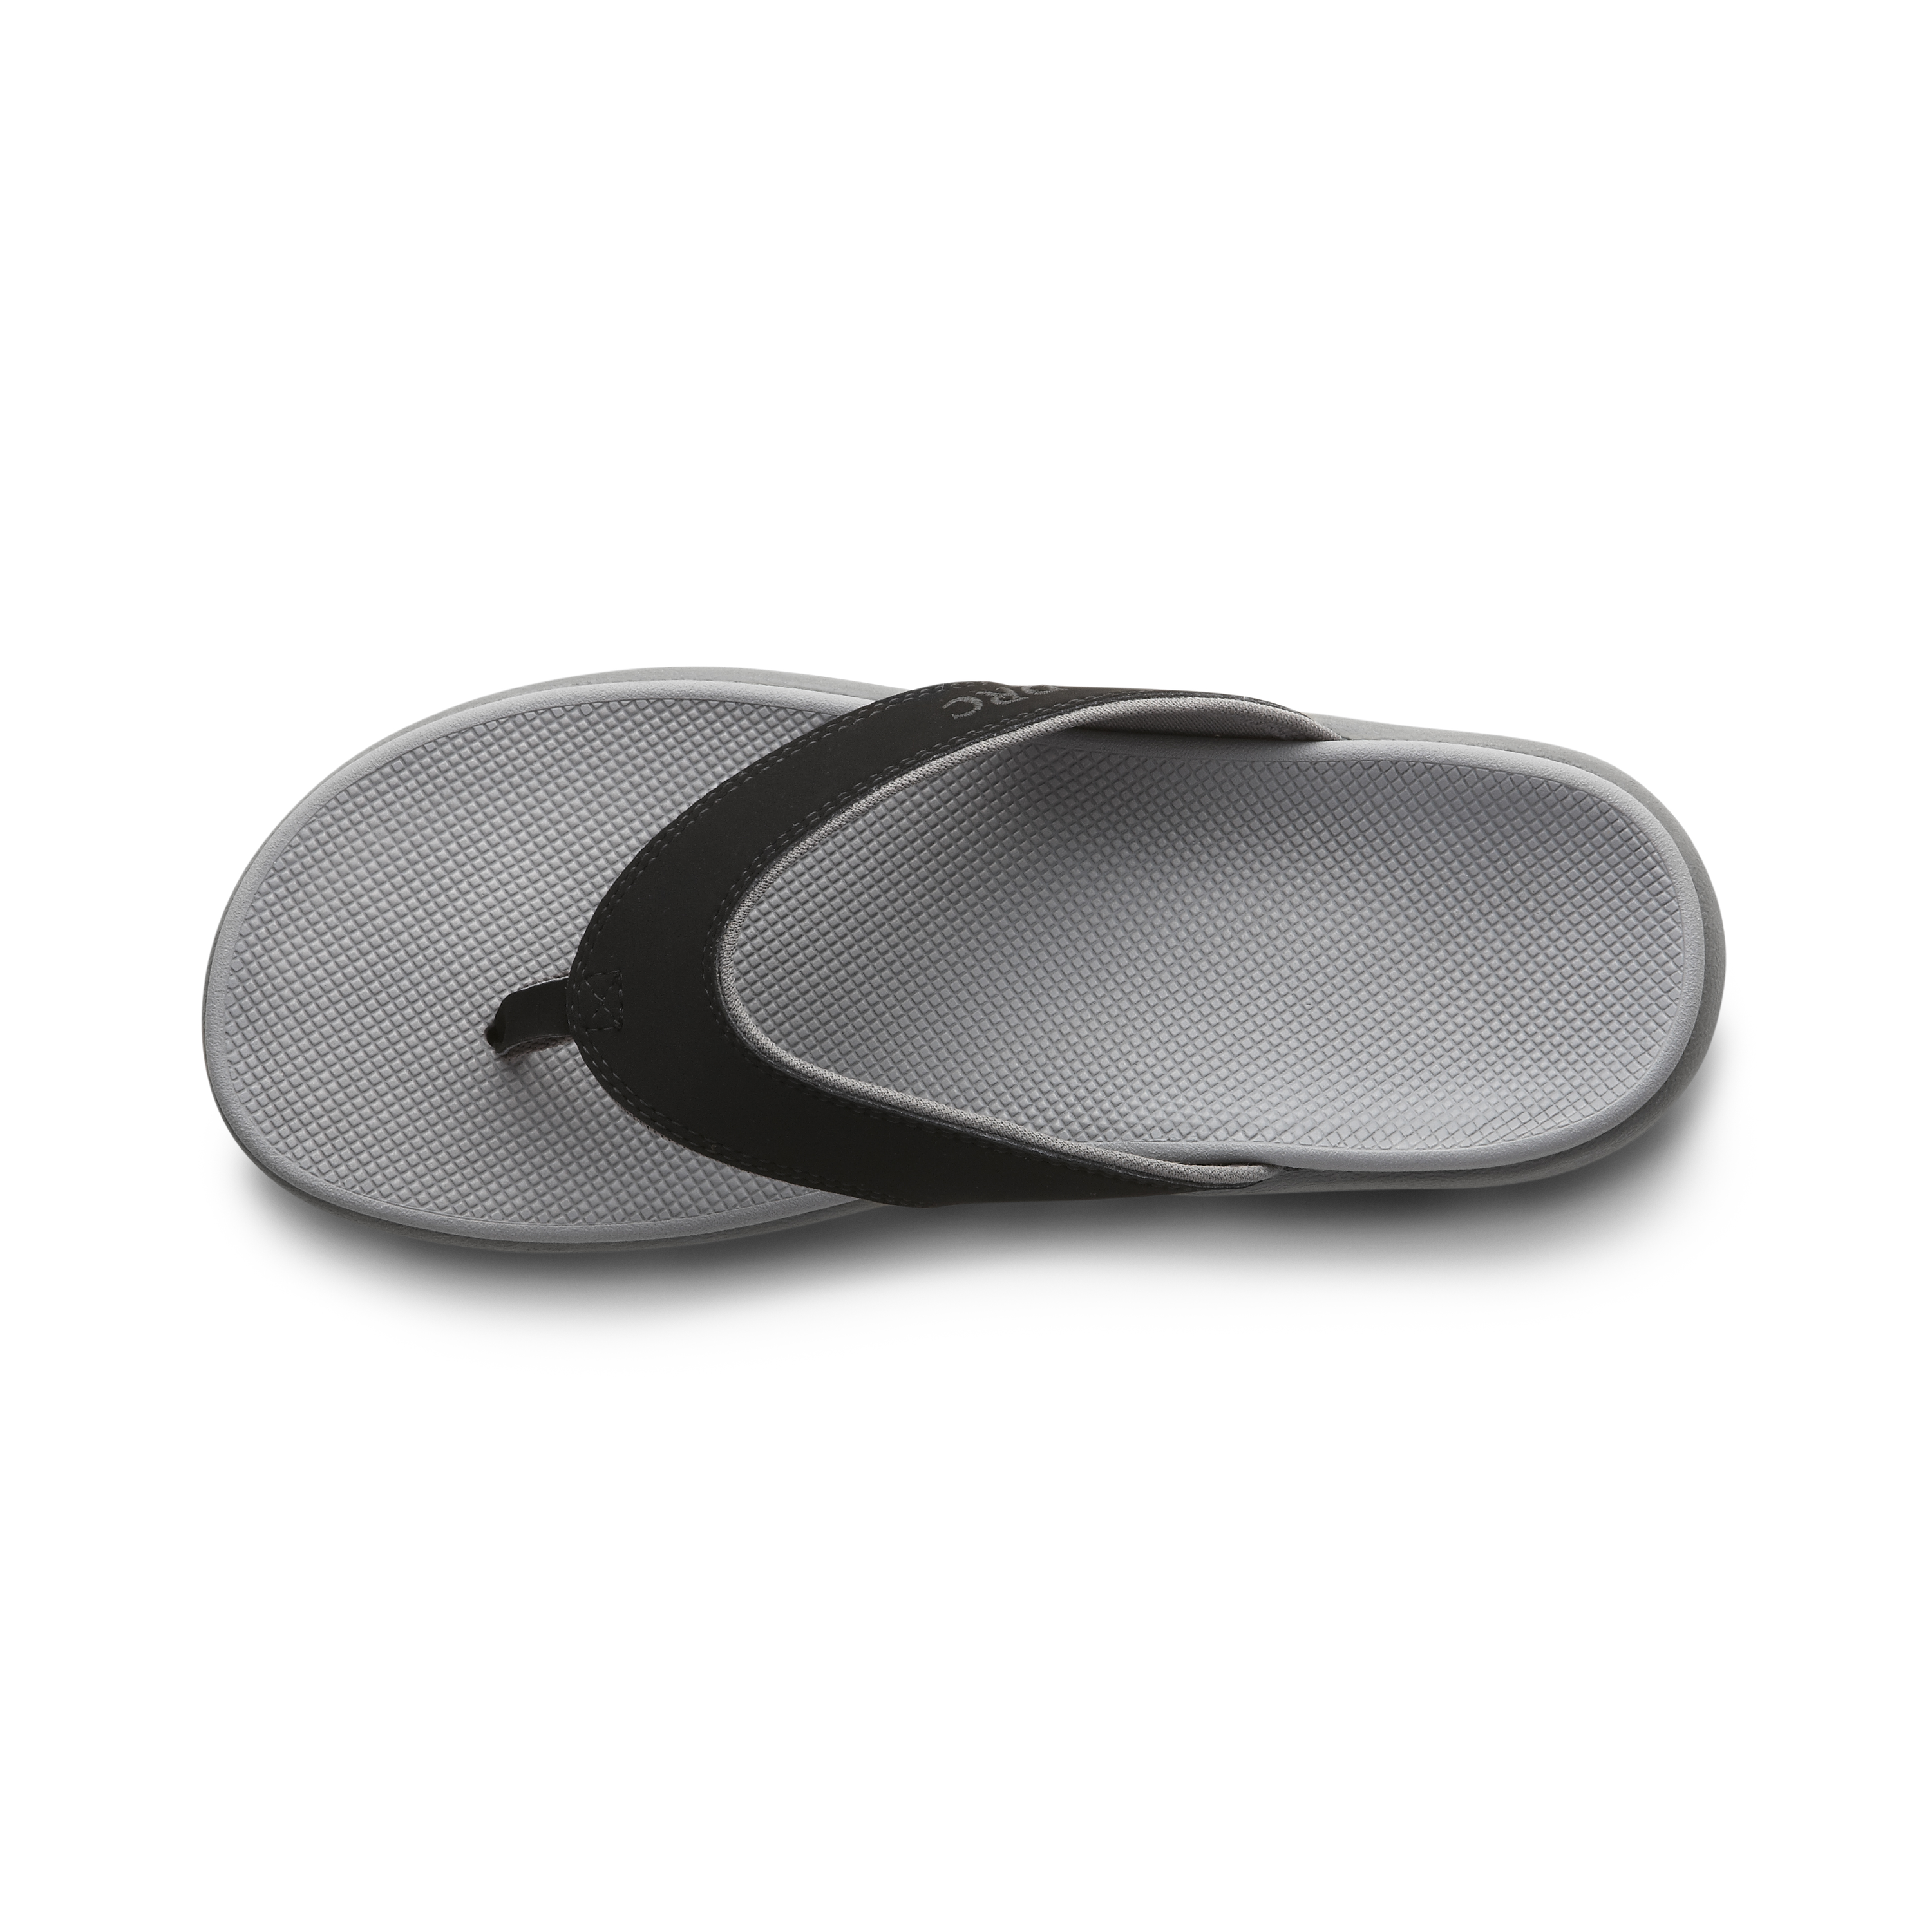 Zusatzbild DR. COMFORT® Collin schwarz, oben, Orthopädische Schuhe, Leichter Sommerschuh mit eingearbeitetem Fußbett für mehr Stabilität